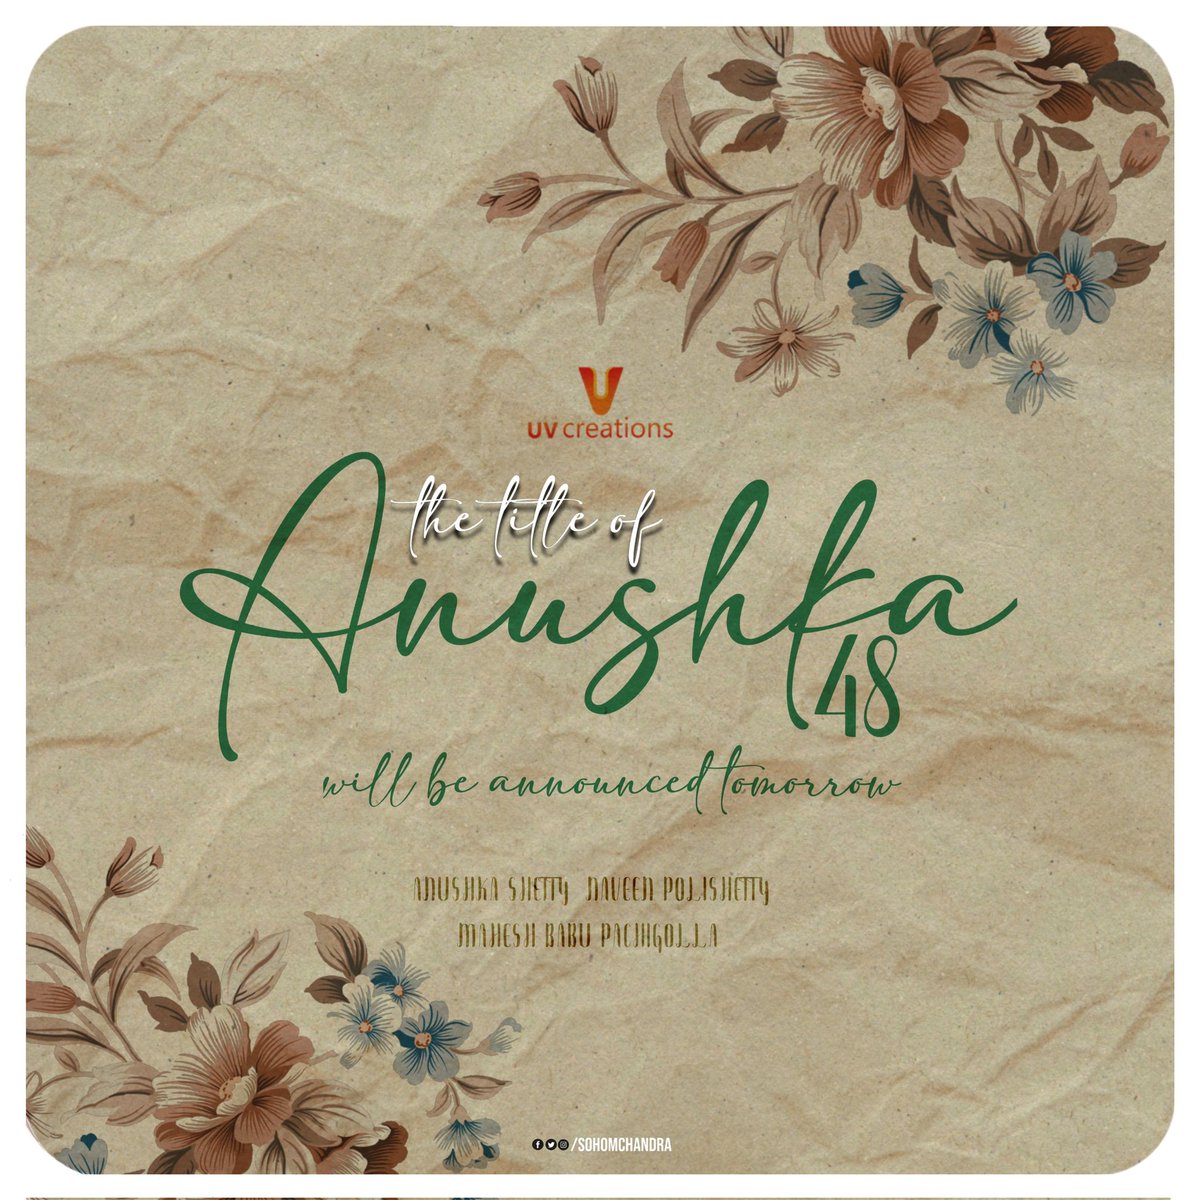 Most Awaited The Title Of #Anushka48 Will Be Announced Tomorrow..!!

@MsAnushkaShetty @NaveenPolishety #MaheshBabuP @radhanmusic  @UV_Creations #AnushkaShetty